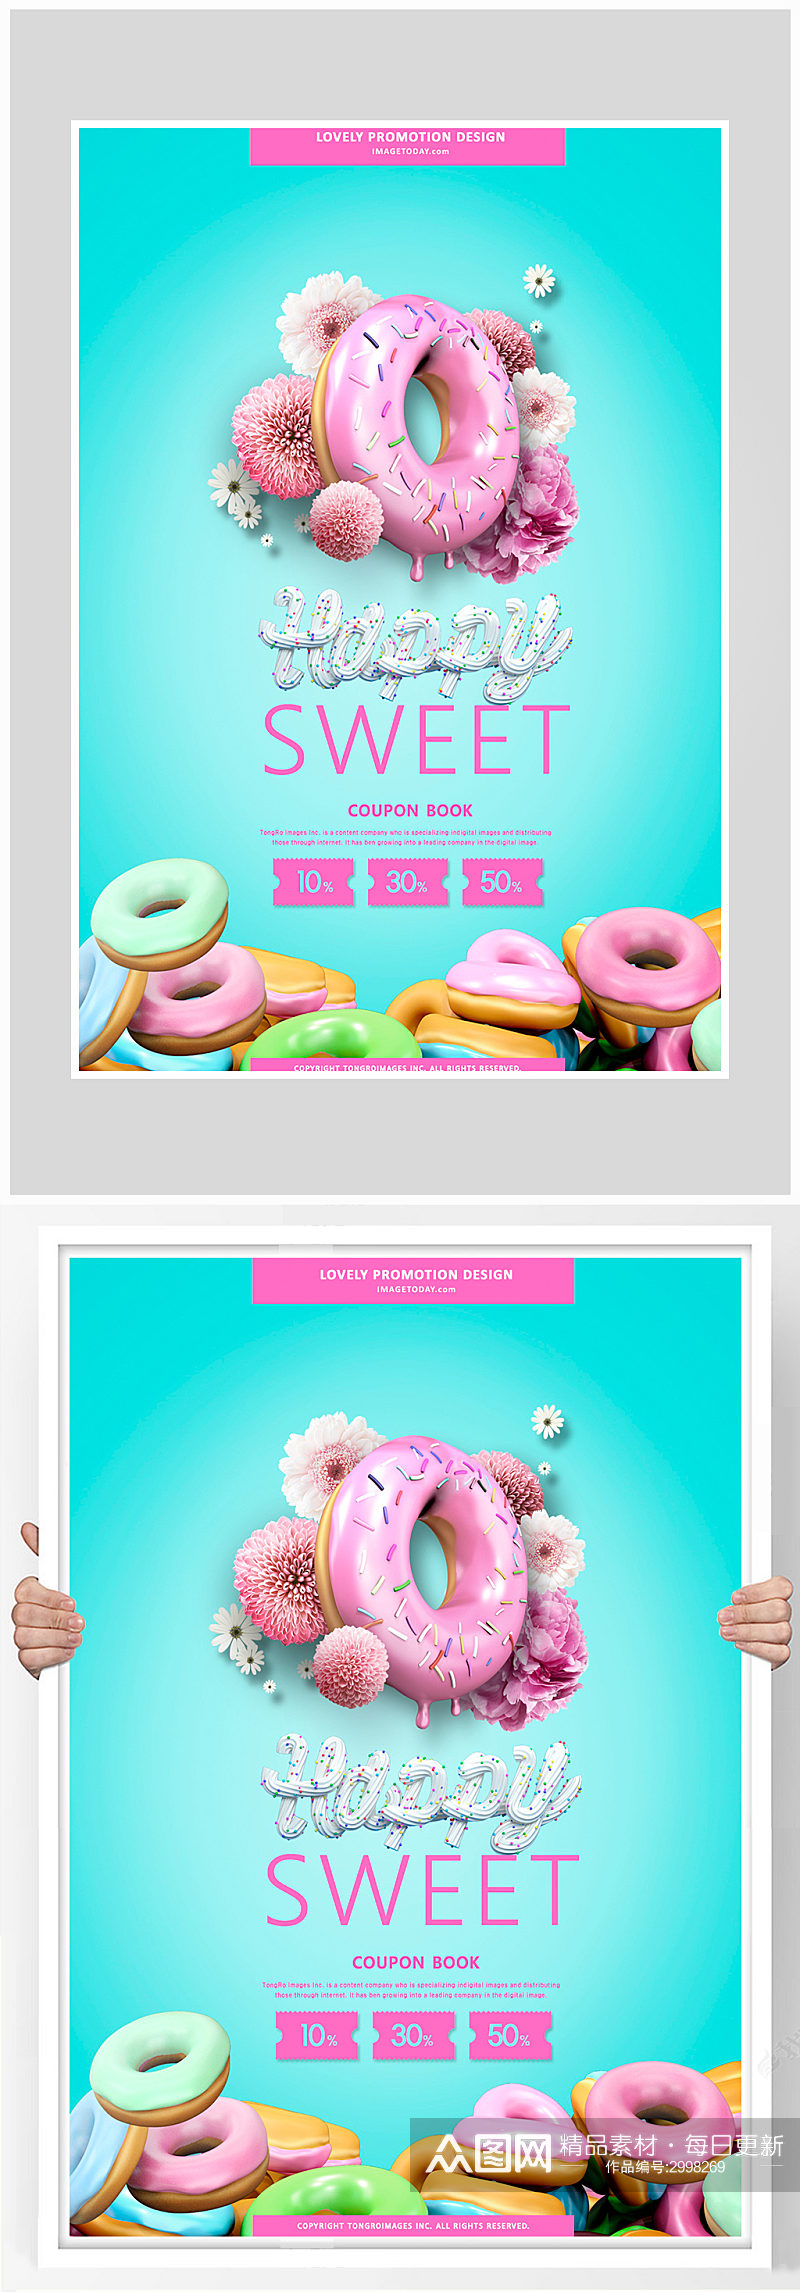 唯美简约甜甜圈甜点海报设计素材